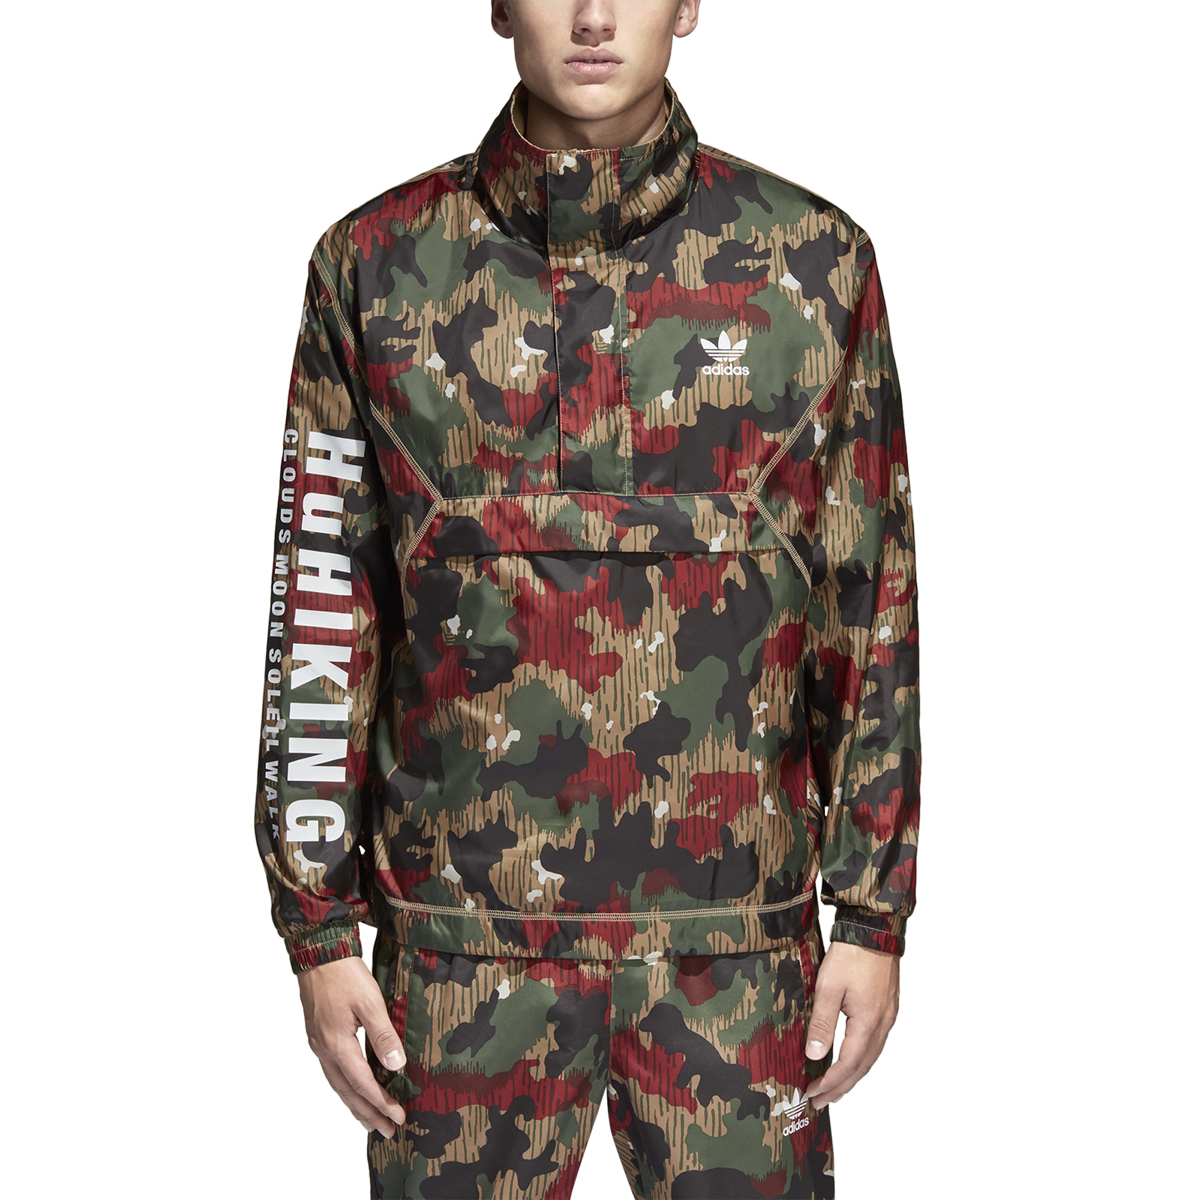 adidas camouflage jacket mens